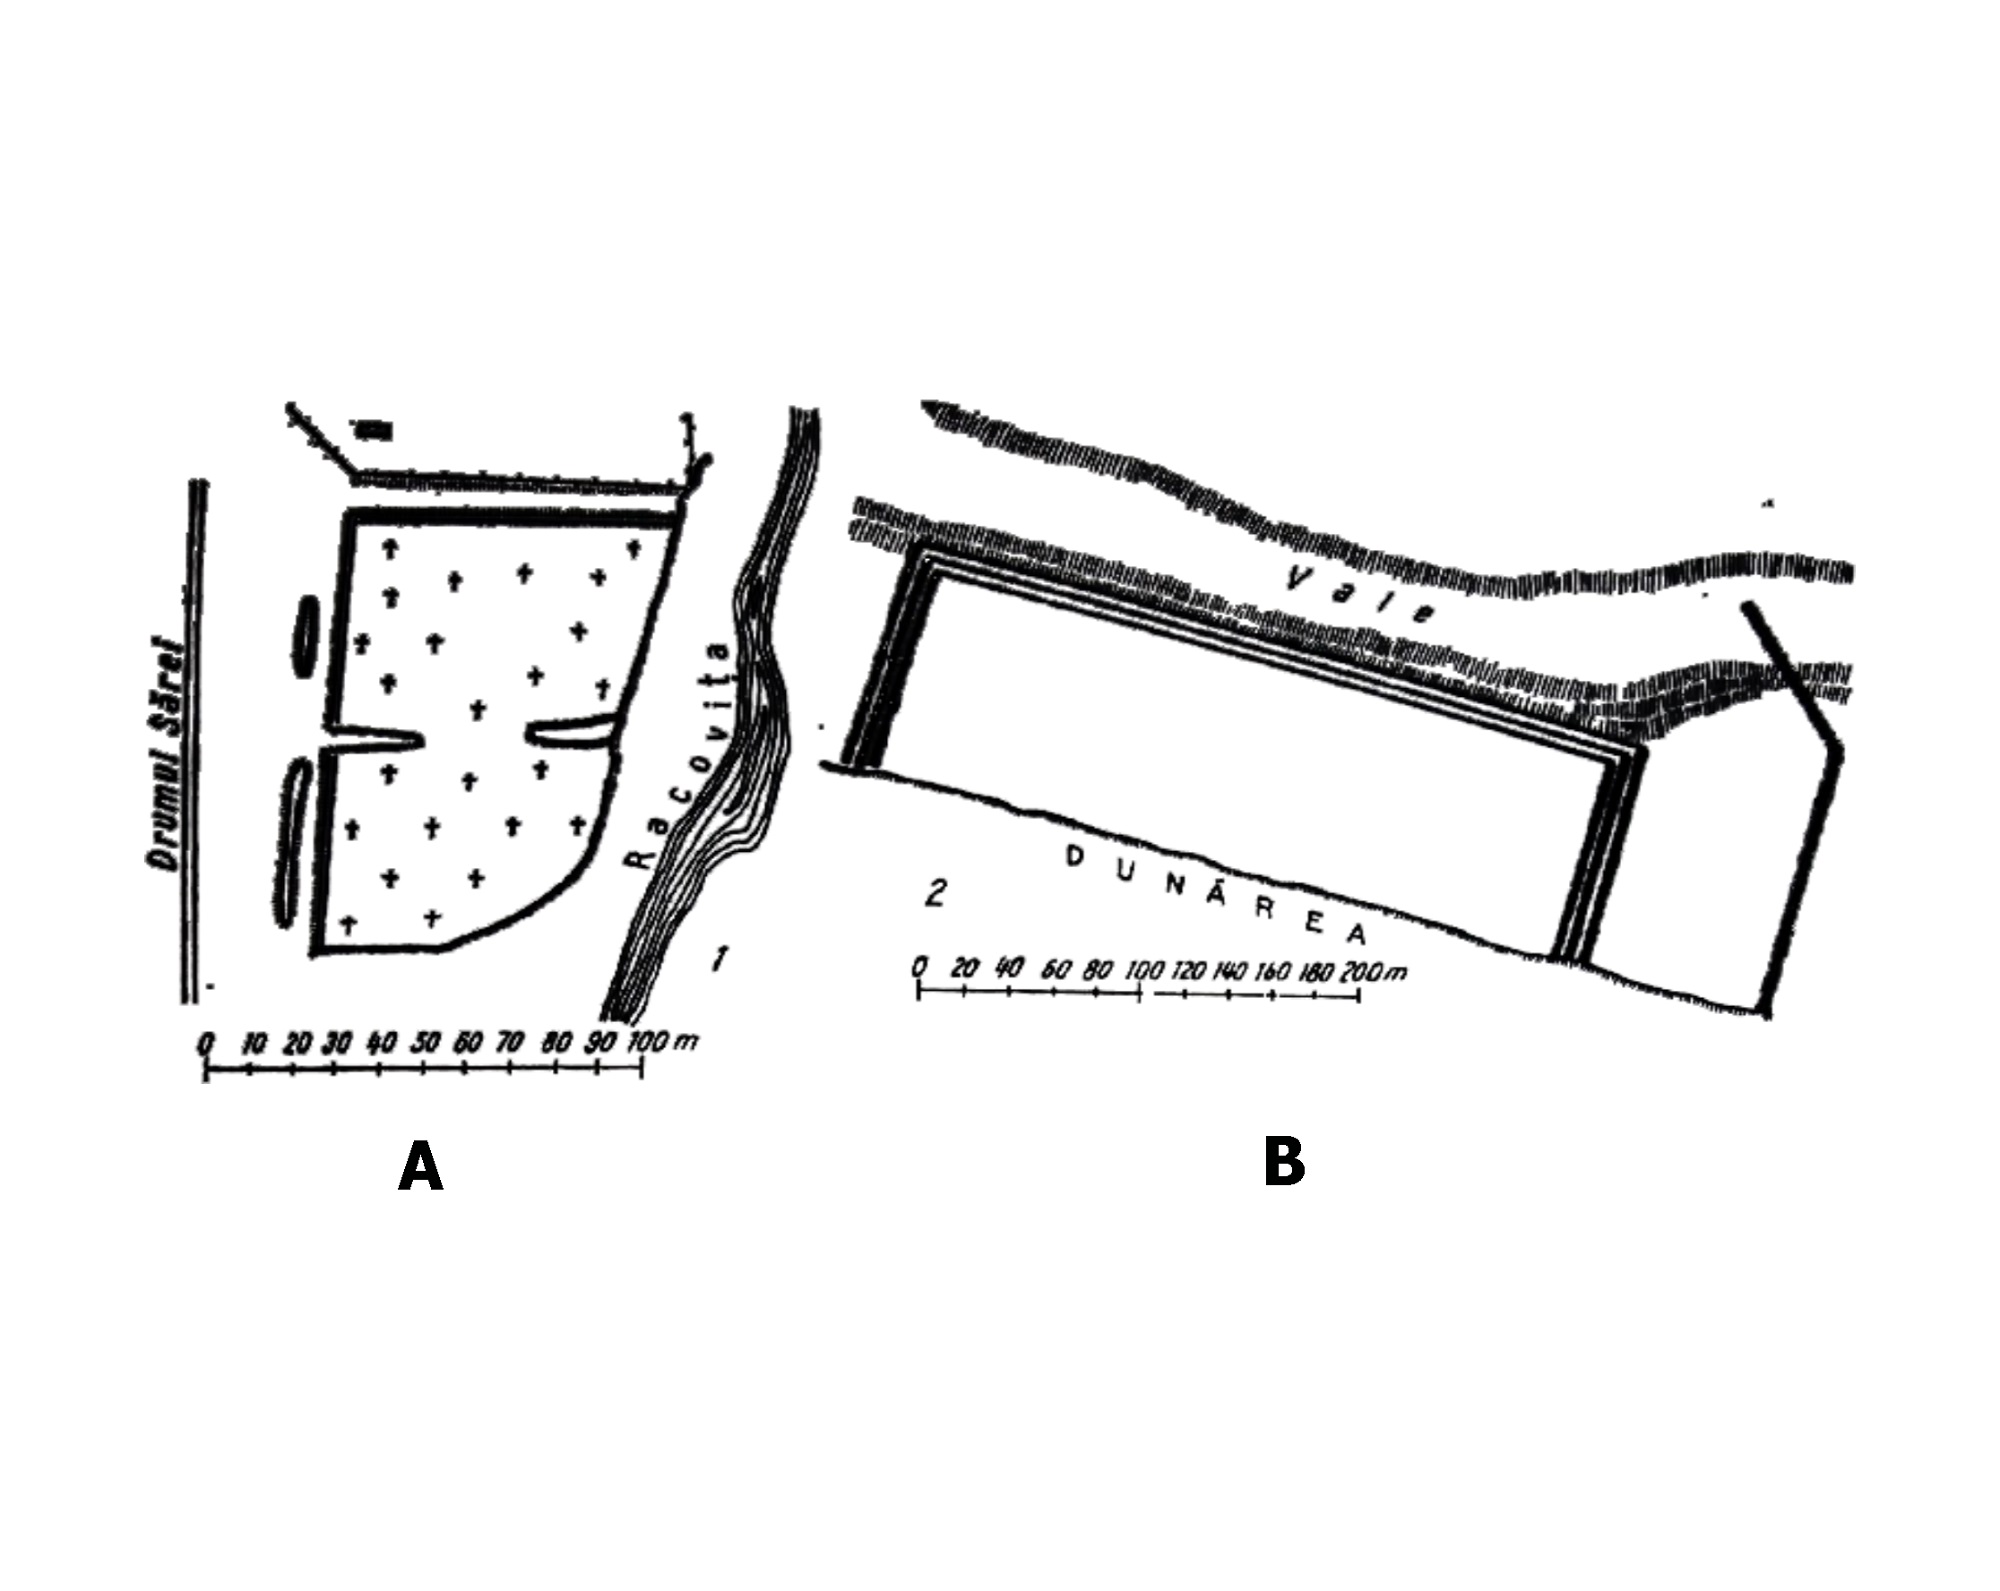 Islaz - castrele de la Islaz Racovița (A) și Islaz Vedea (B) (Tudor 1978, 278, fig. 75/1-2)